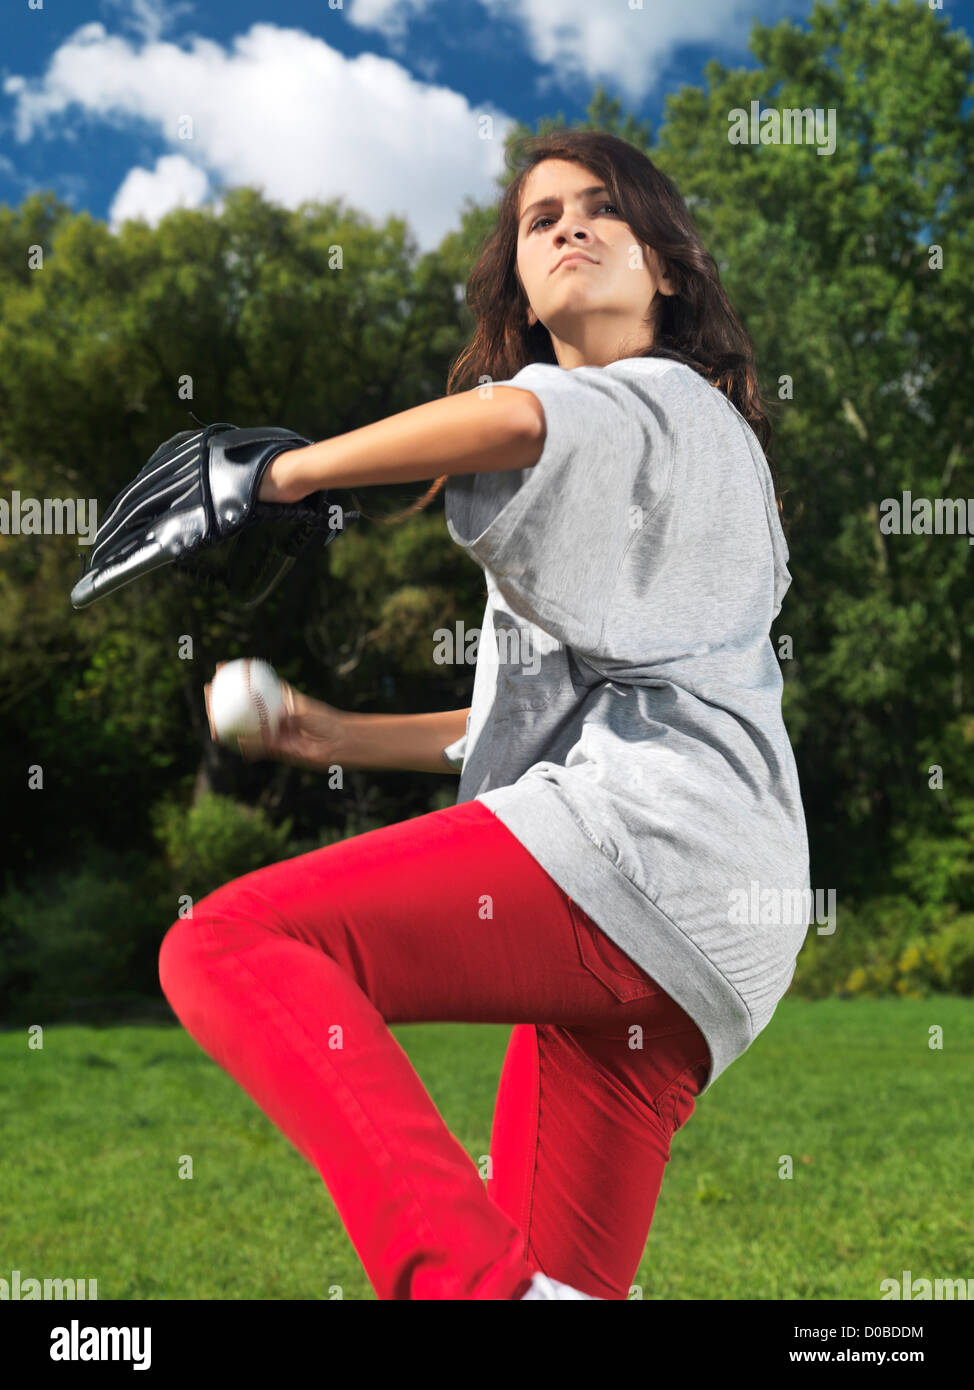 Captura la acción de una adolescente con un guante de béisbol, throing practicando una bola, verano activo estilo de vida. Foto de stock